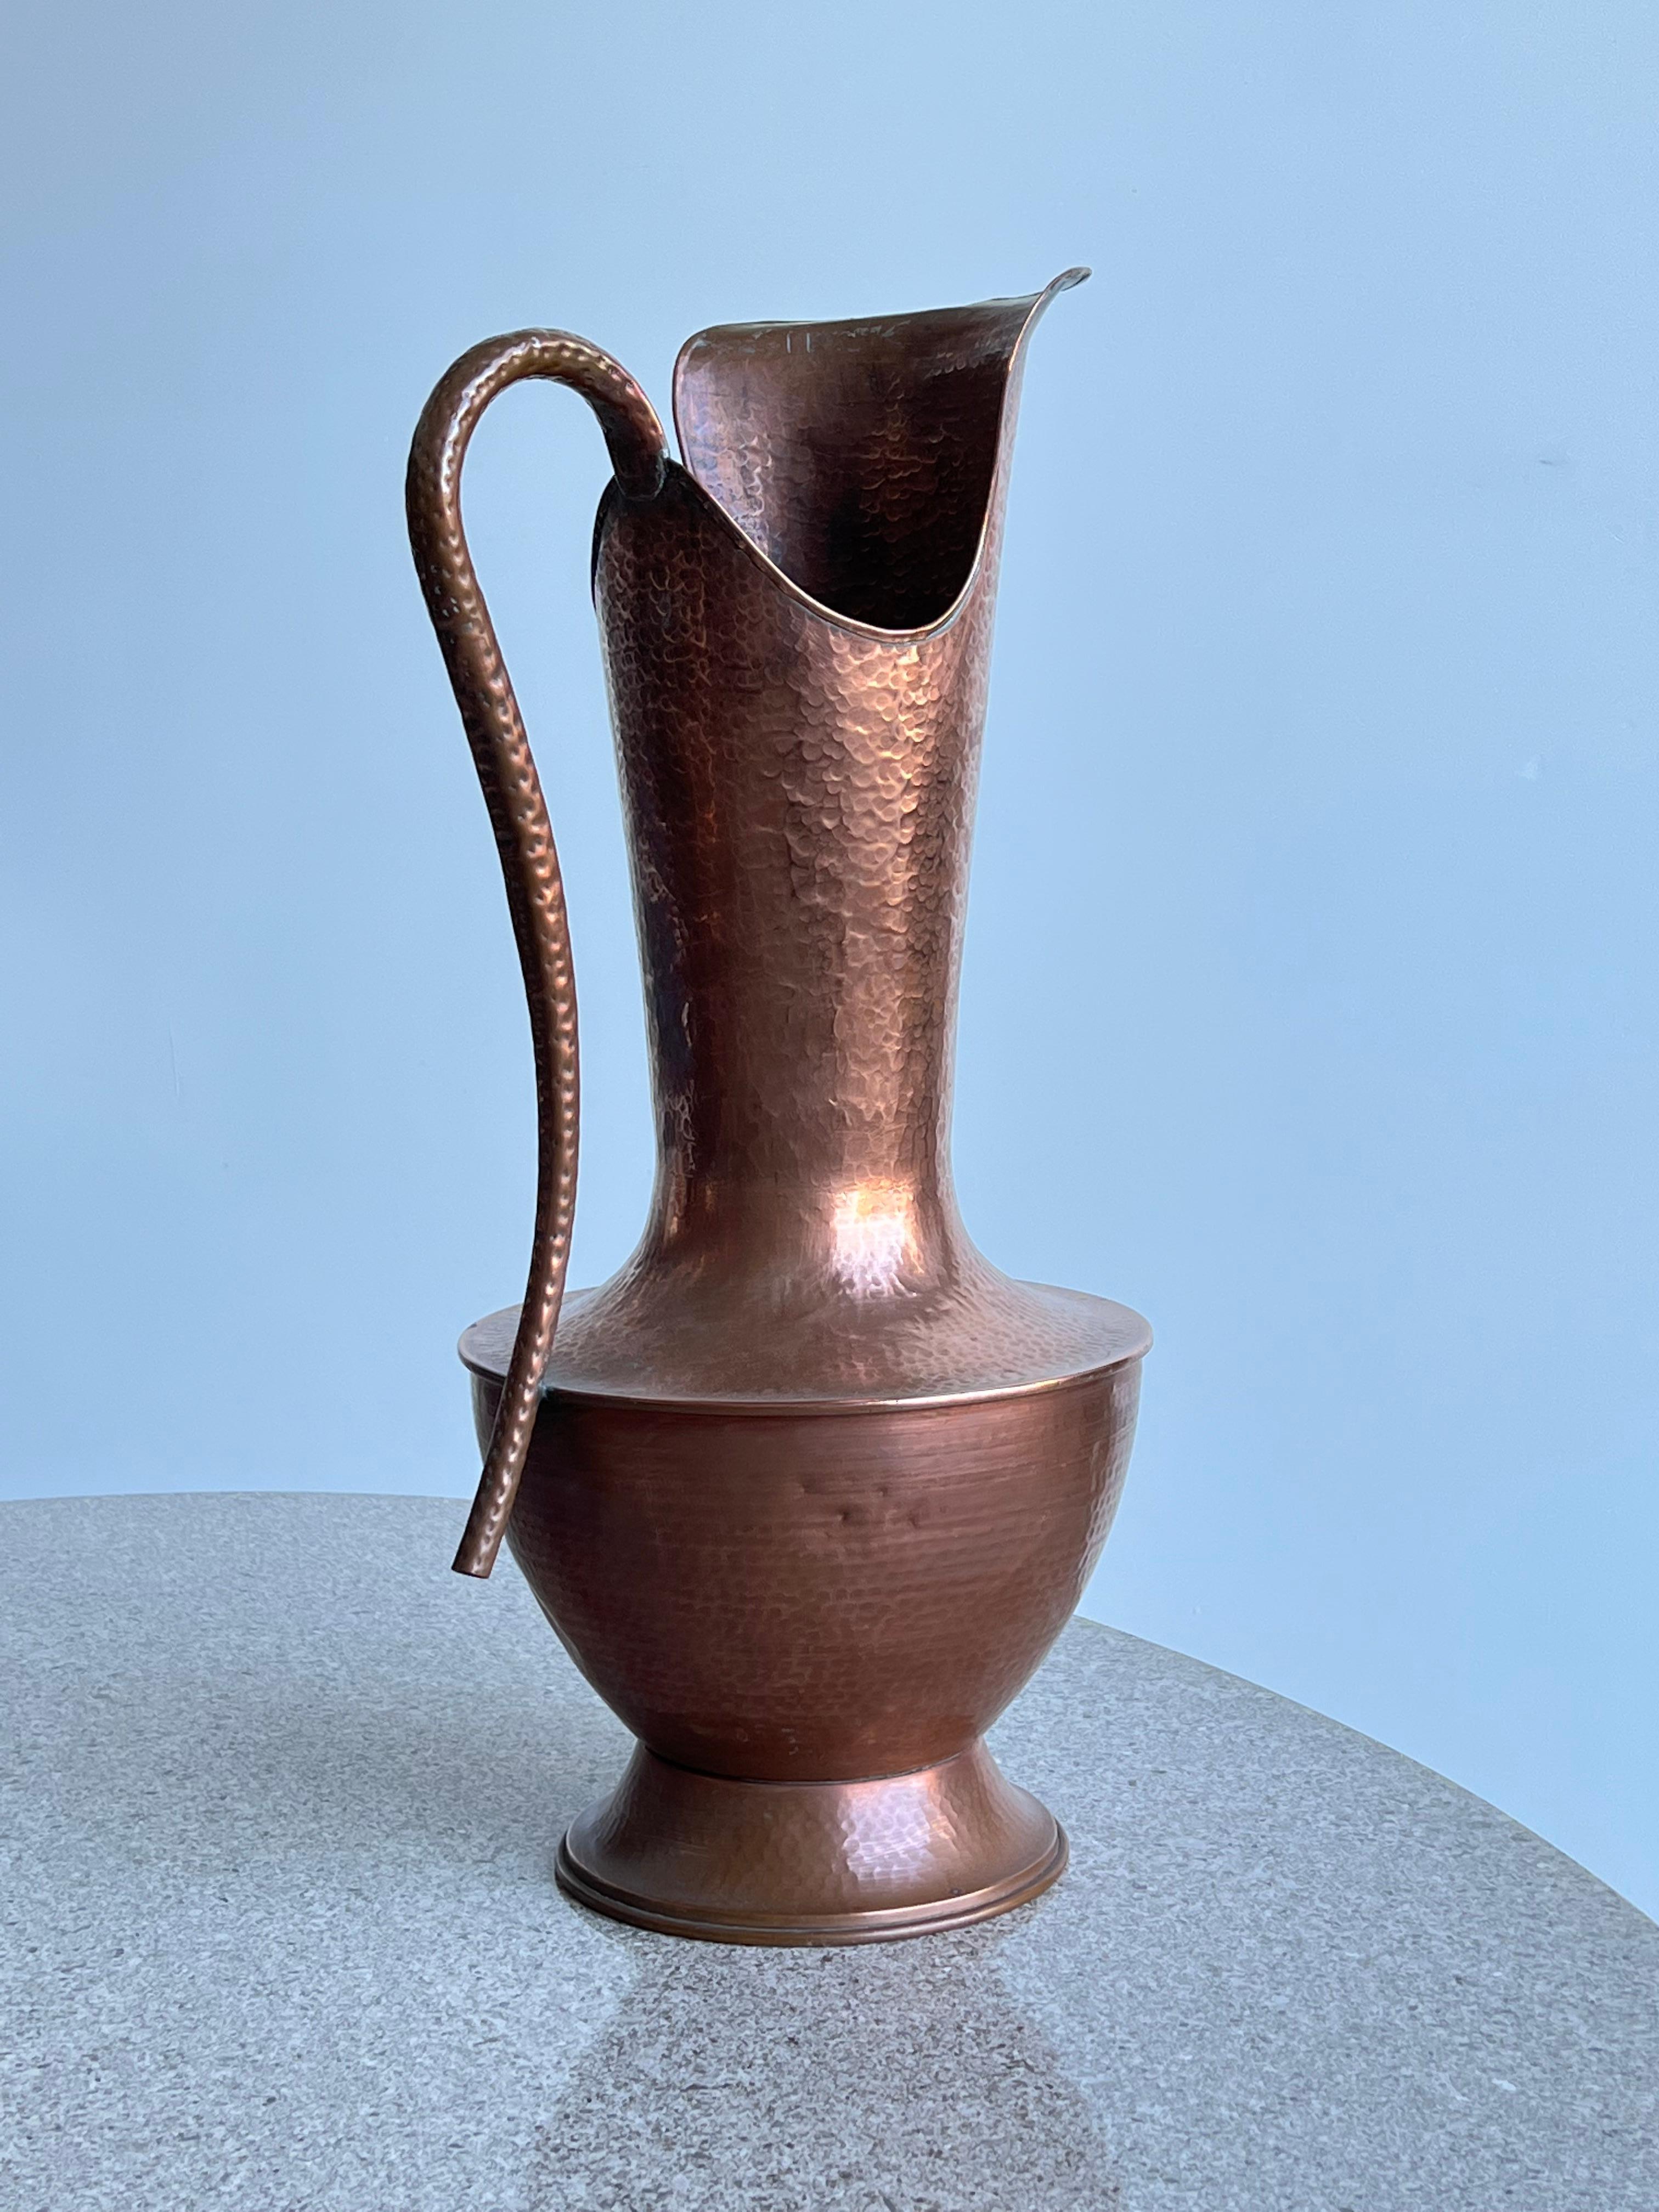 Magnifique grand vase en cuivre battu à la main d'aspect moderniste avec une poignée latérale.